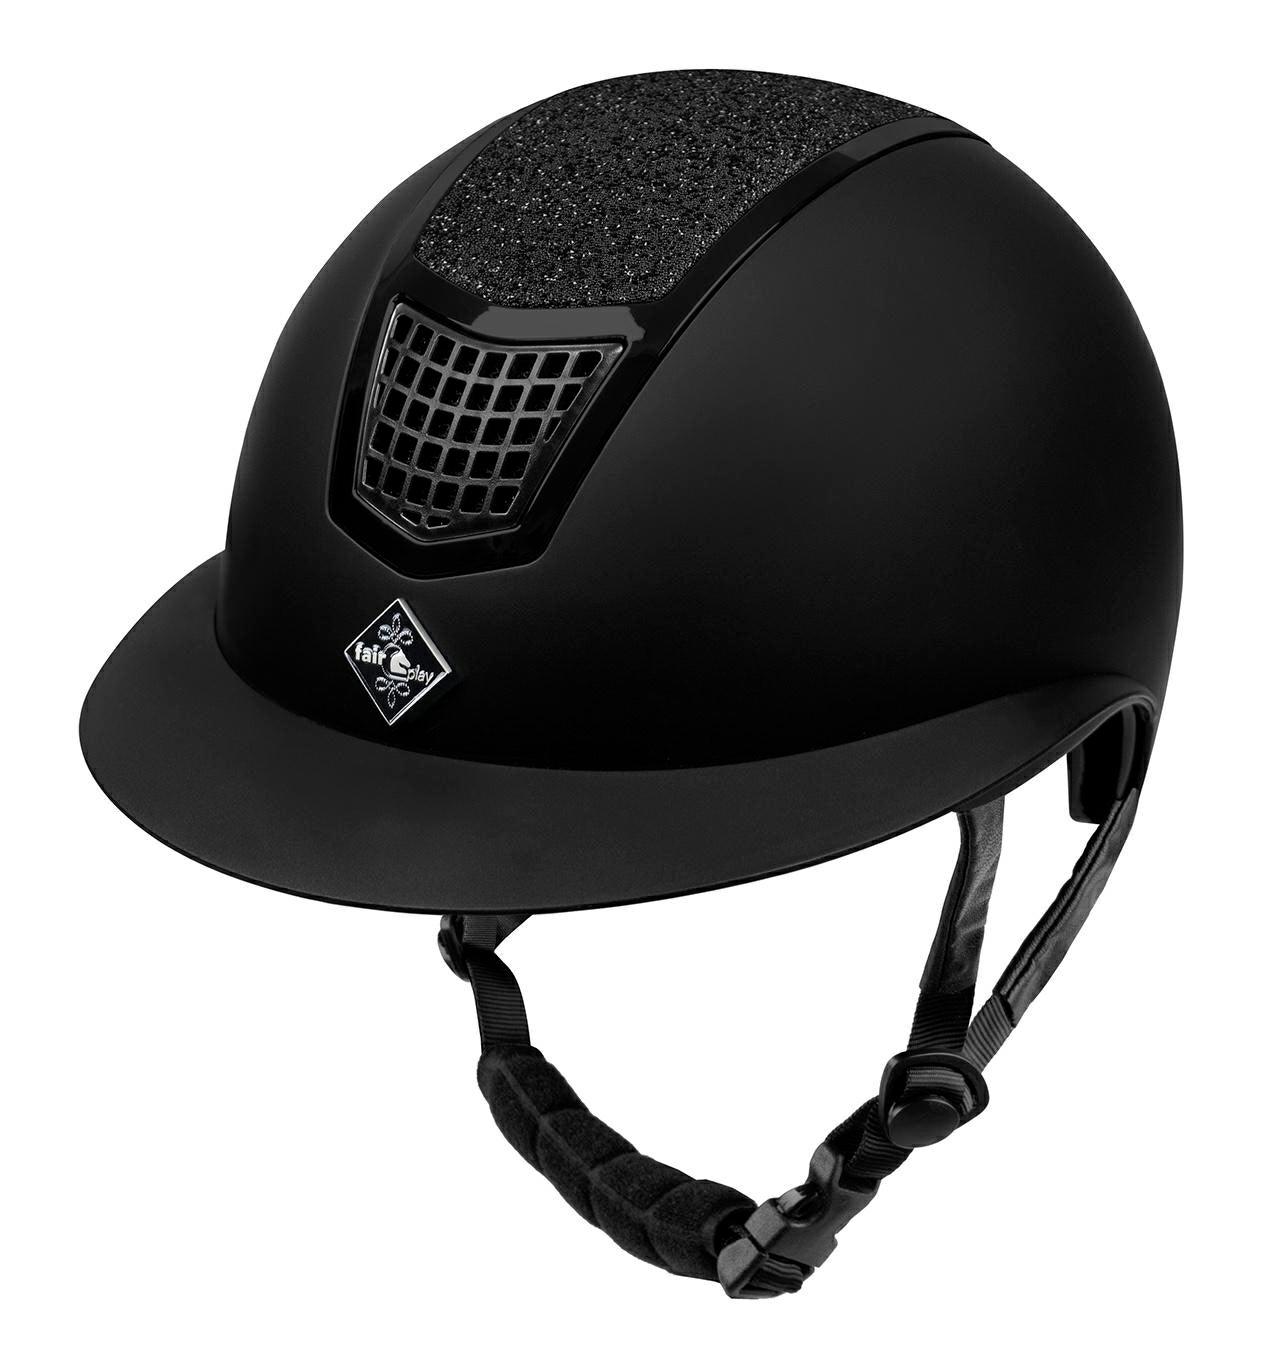 Fairplay Quantinum Eclipse W-V Helmet